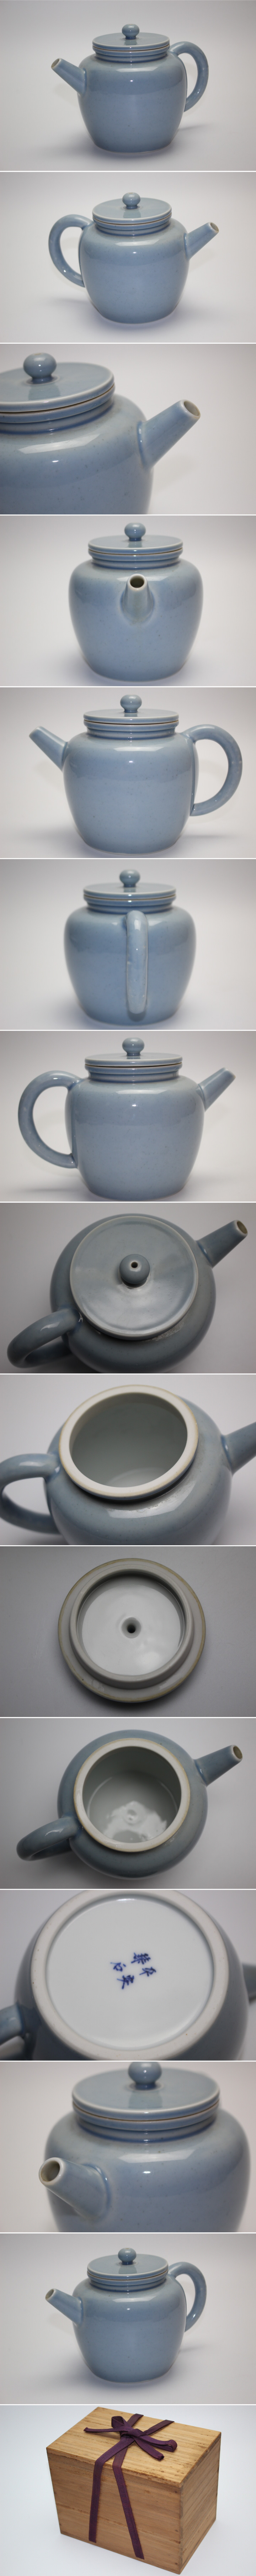 【売り日本】■平安 華石 天藍釉水柱 煎茶/茶道具■ 送料込み 茶道具